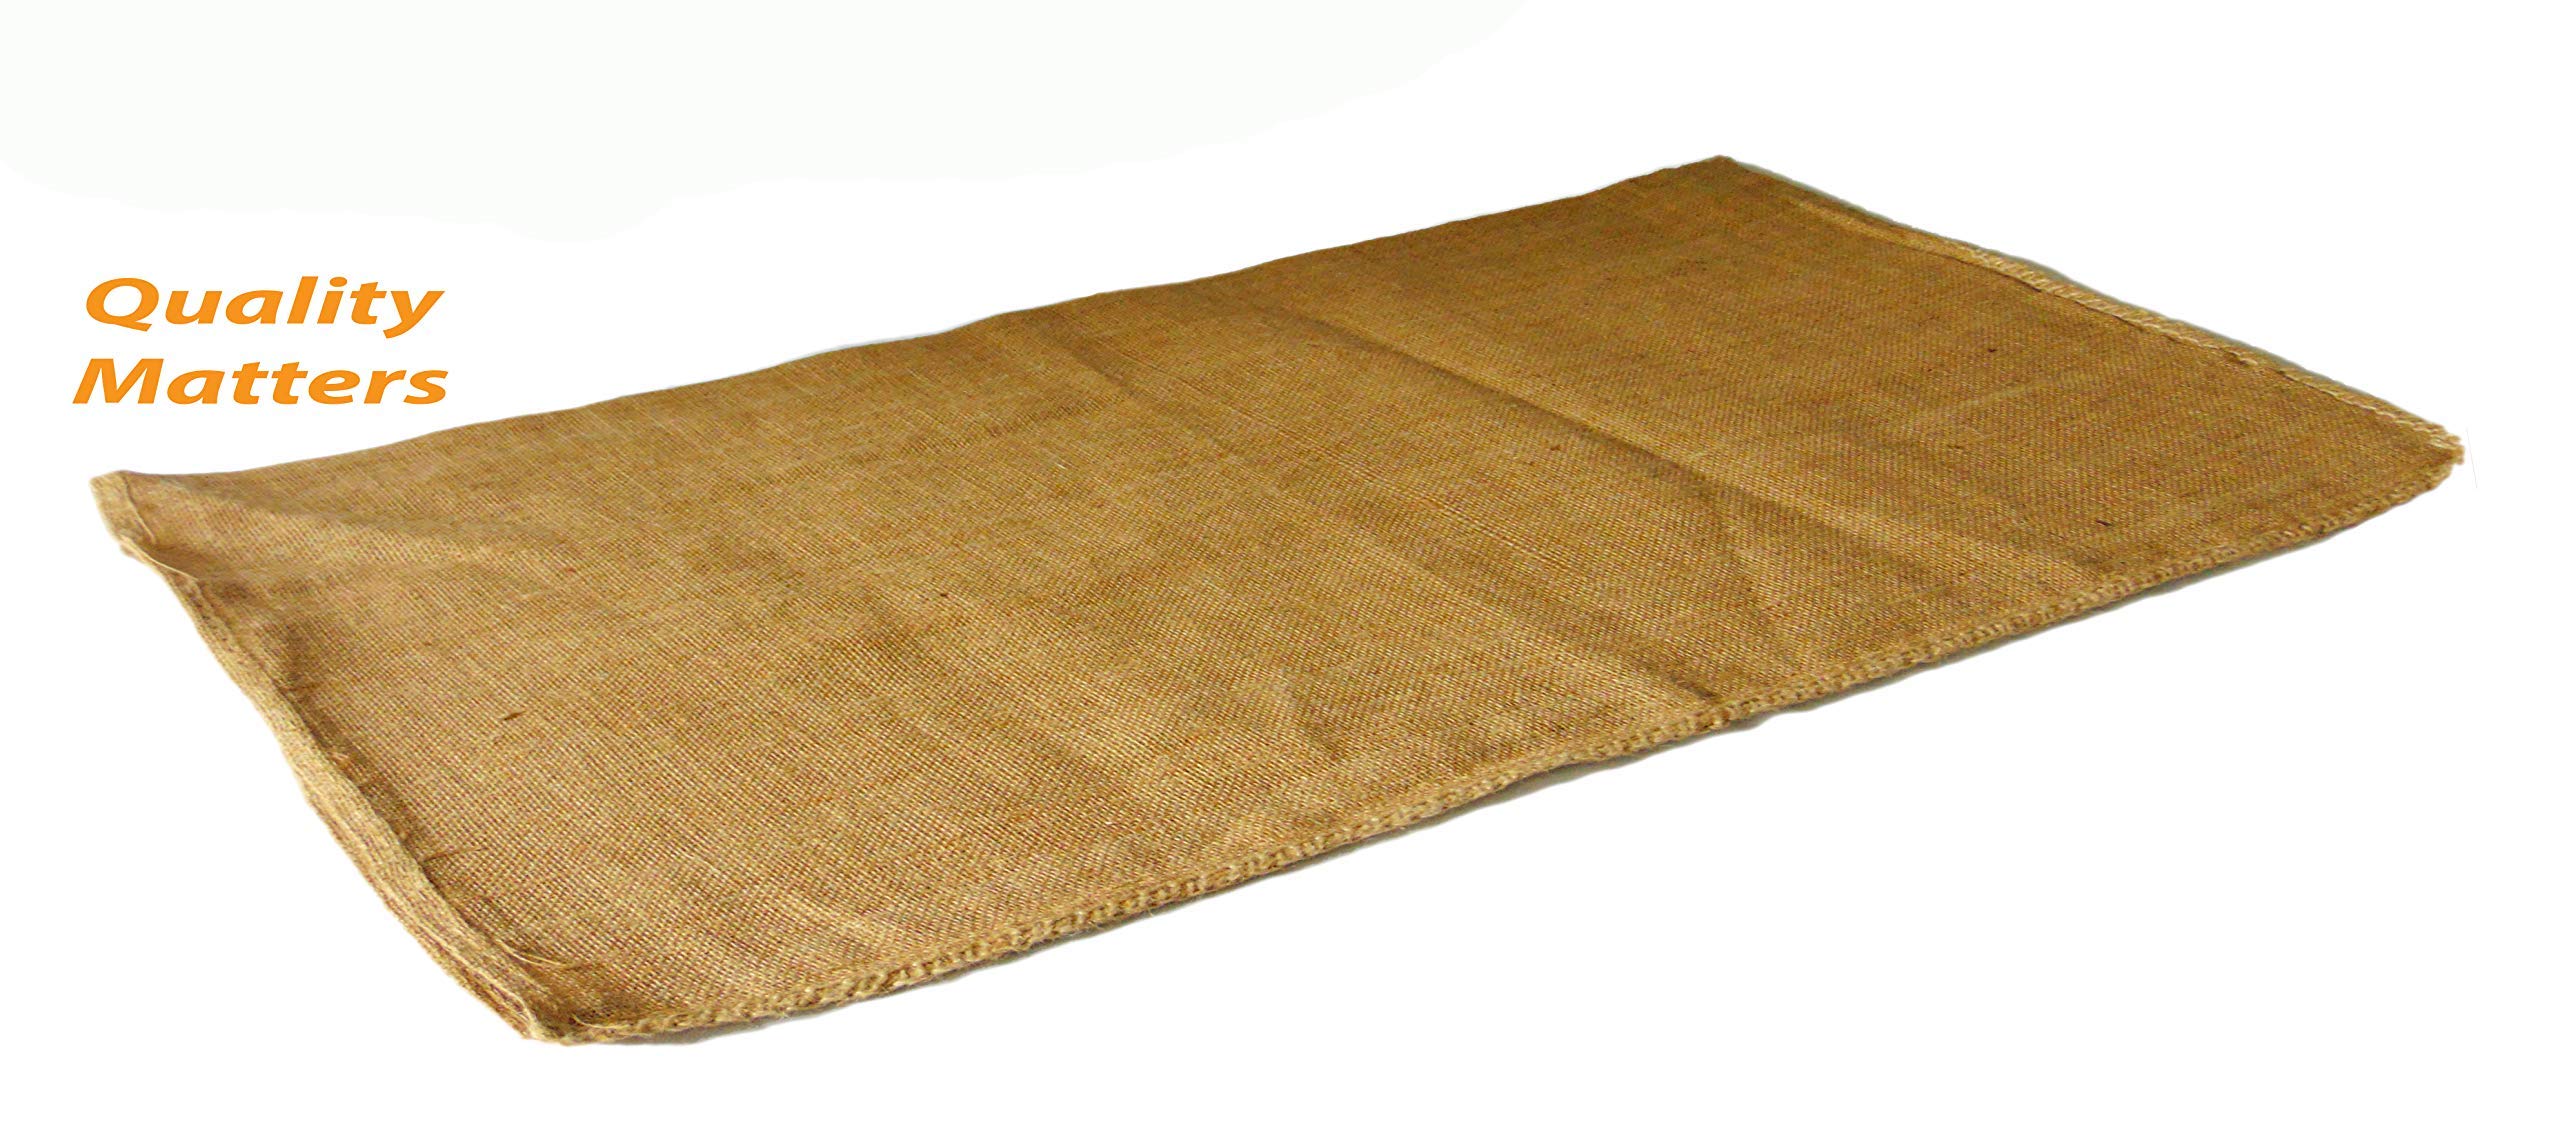 Burlap sack | Coffee Bag | Potato Bag | Burlap Bags - Natural Jute Burlap Fabric